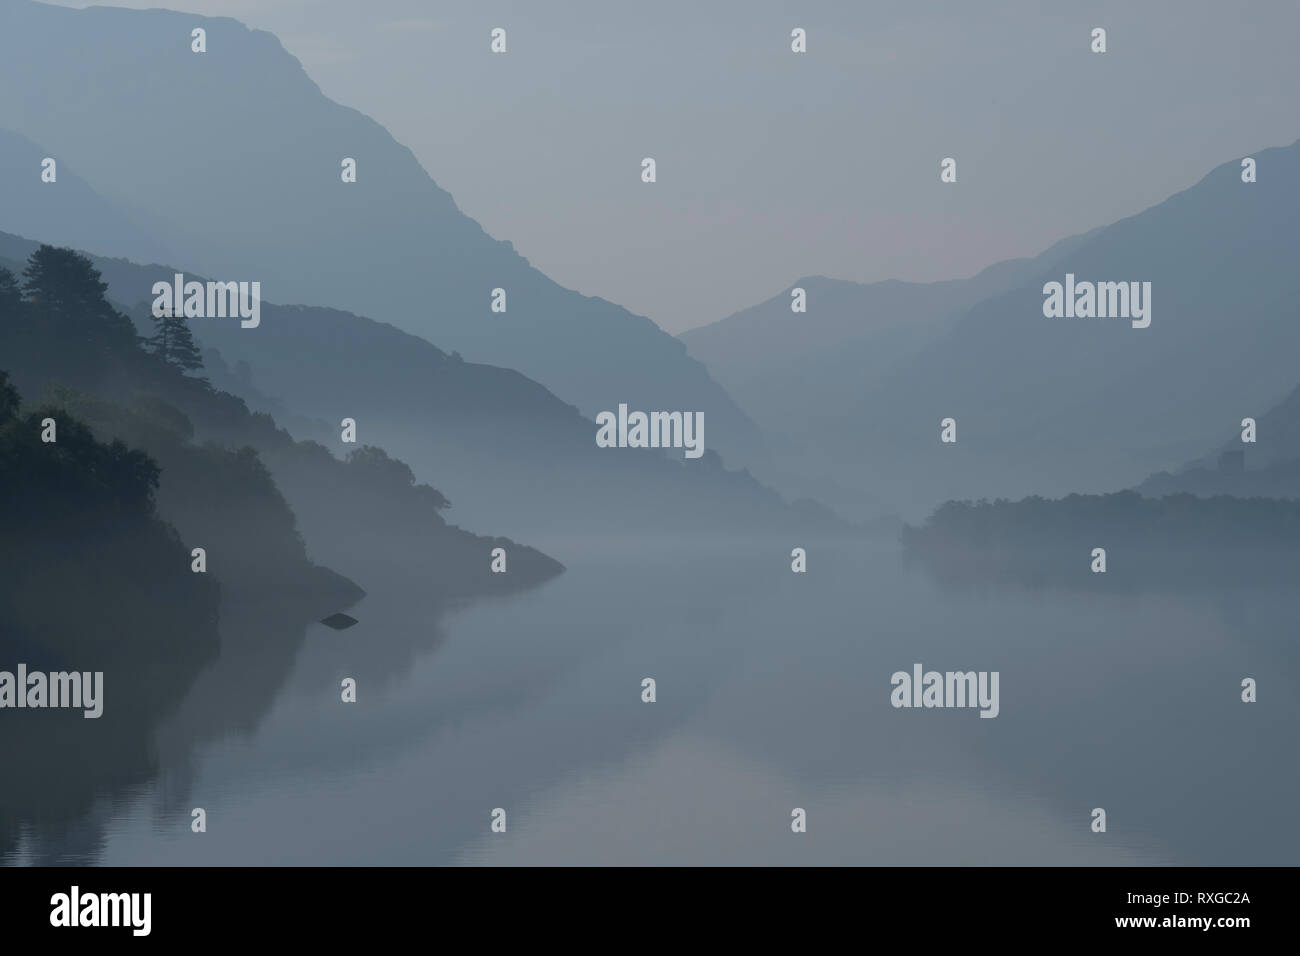 Shades of Grey, Misty Morning at Llyn Padarn and the Llanberis Pass, Snowdonia National Park, North Wales, UK Stock Photo